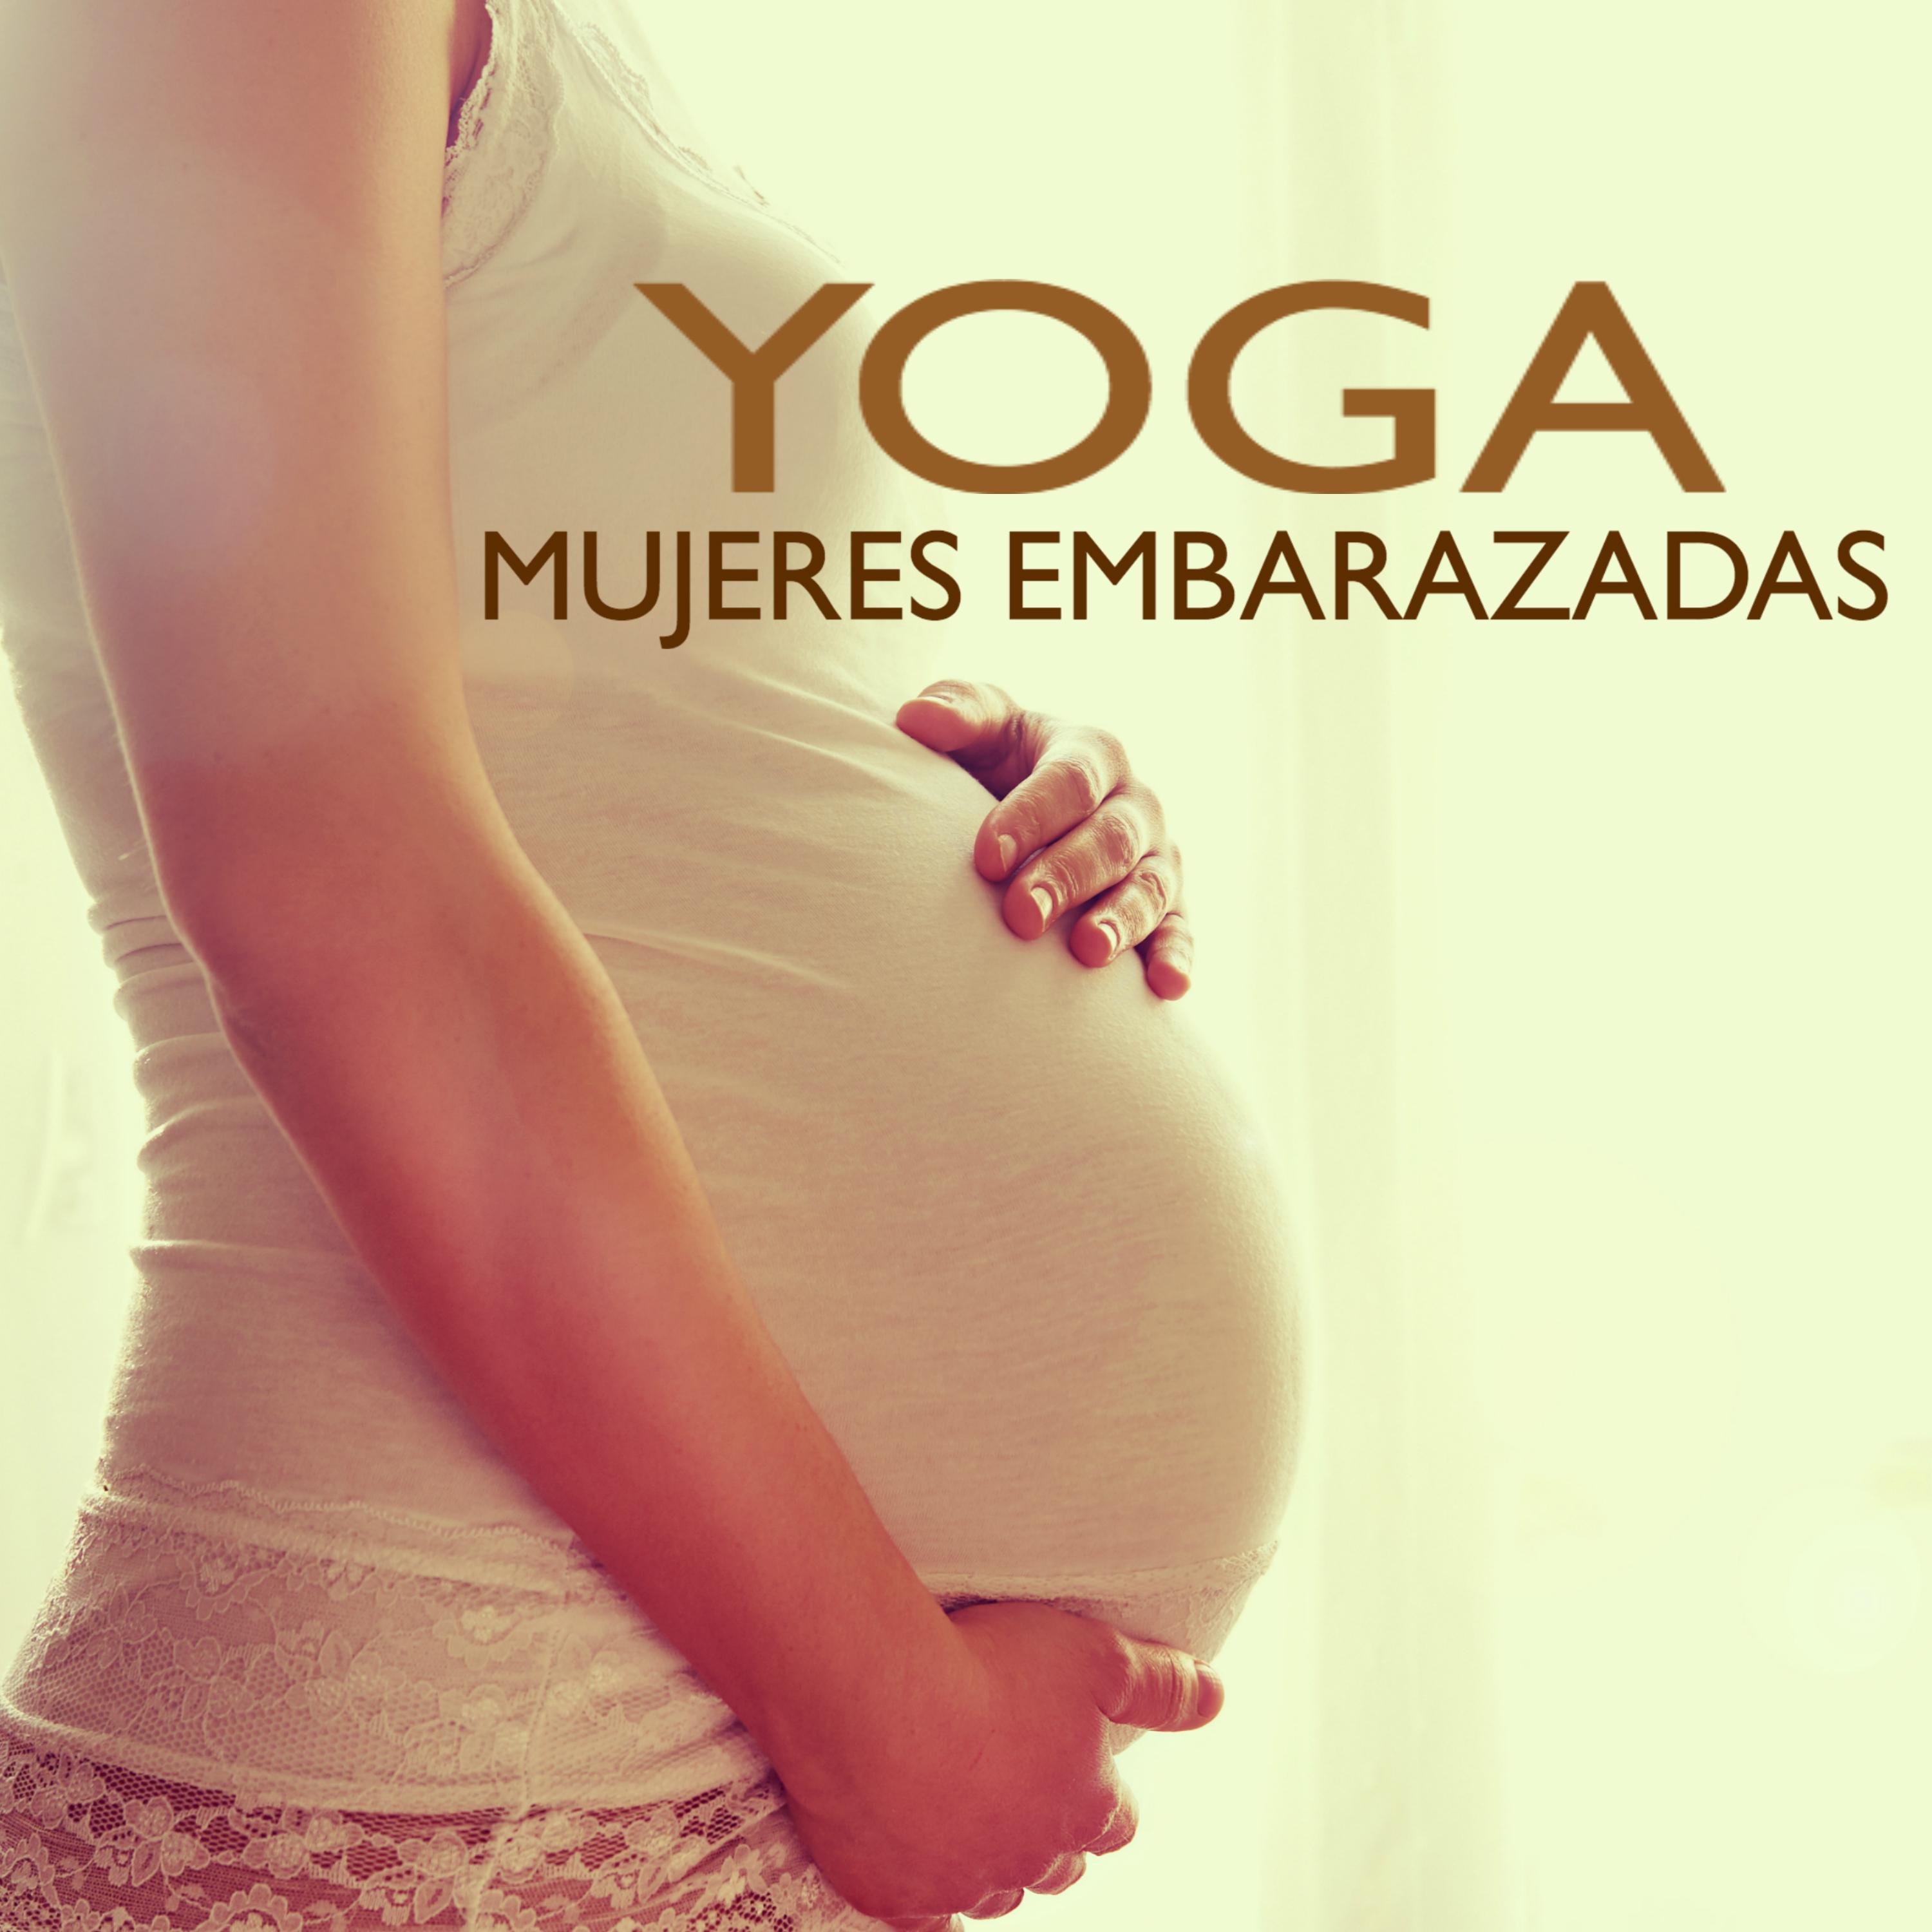 Yoga para Mujeres Embarazadas - Canciones Relajantes para Bebes en el Vientre Materno